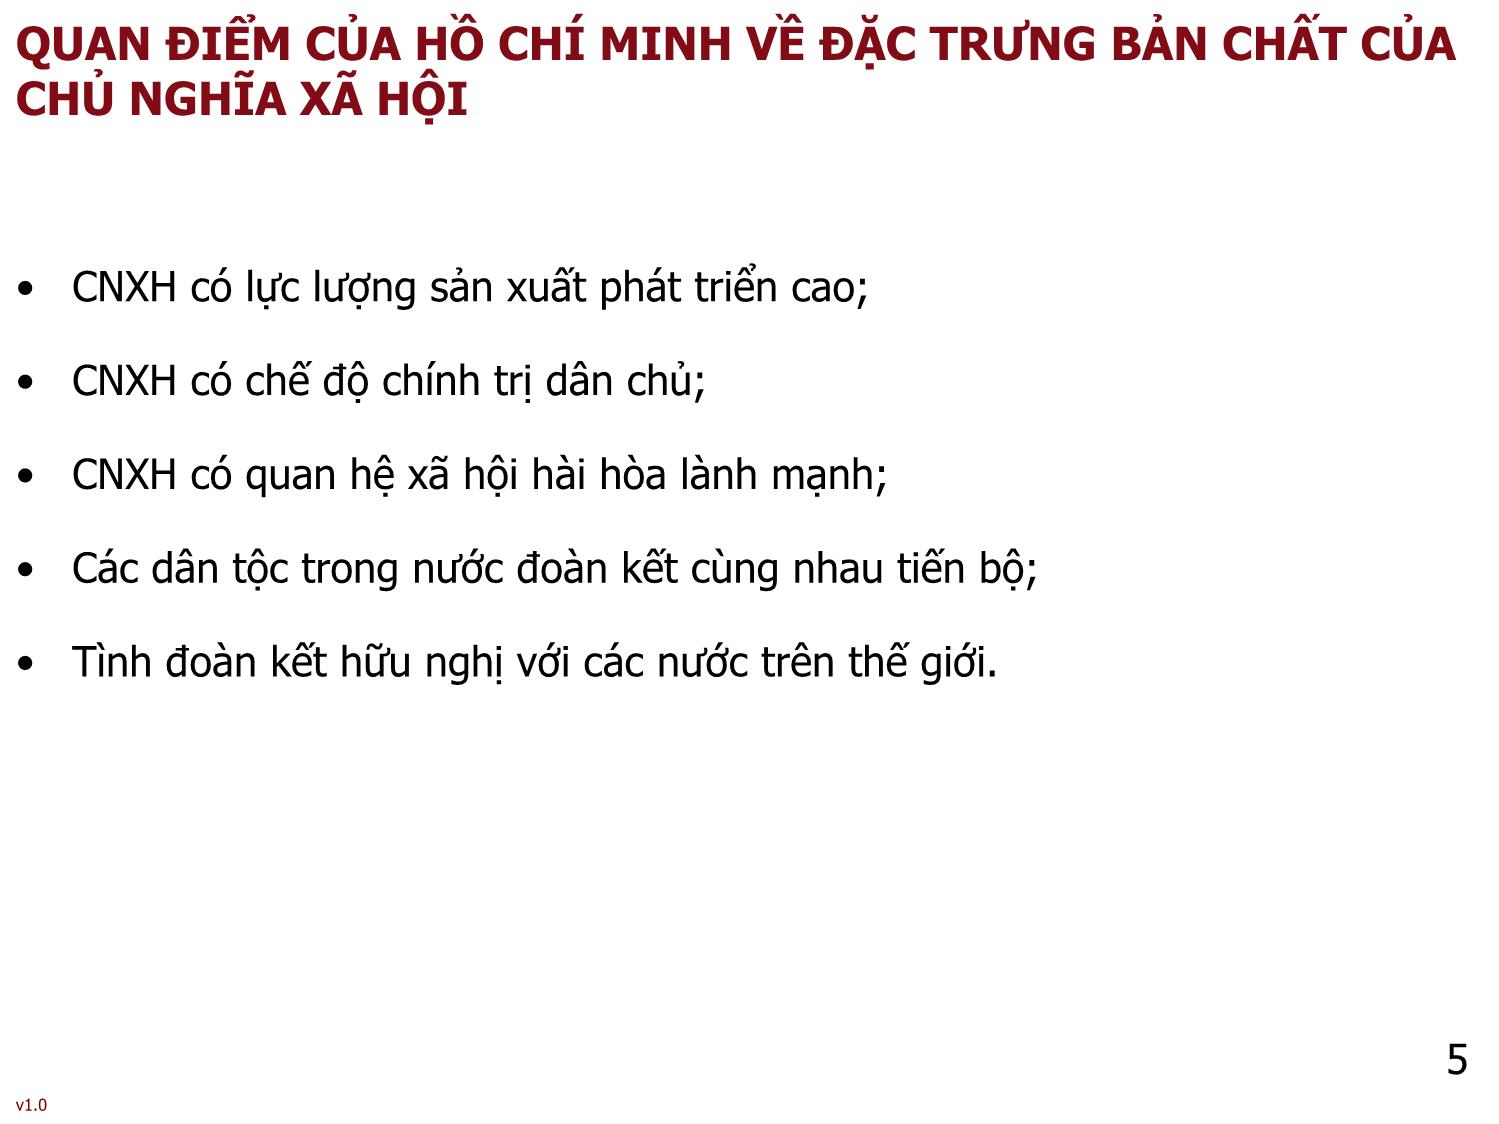 Bài giảng Tư tưởng Hồ Chí Minh - Bài 3: Tư tưởng Hồ Chí Minh về chủ nghĩa xã hội và con đường quá độ lên chủ nghĩa xã hội ở Việt Nam - Phạm Ngọc Anh trang 5